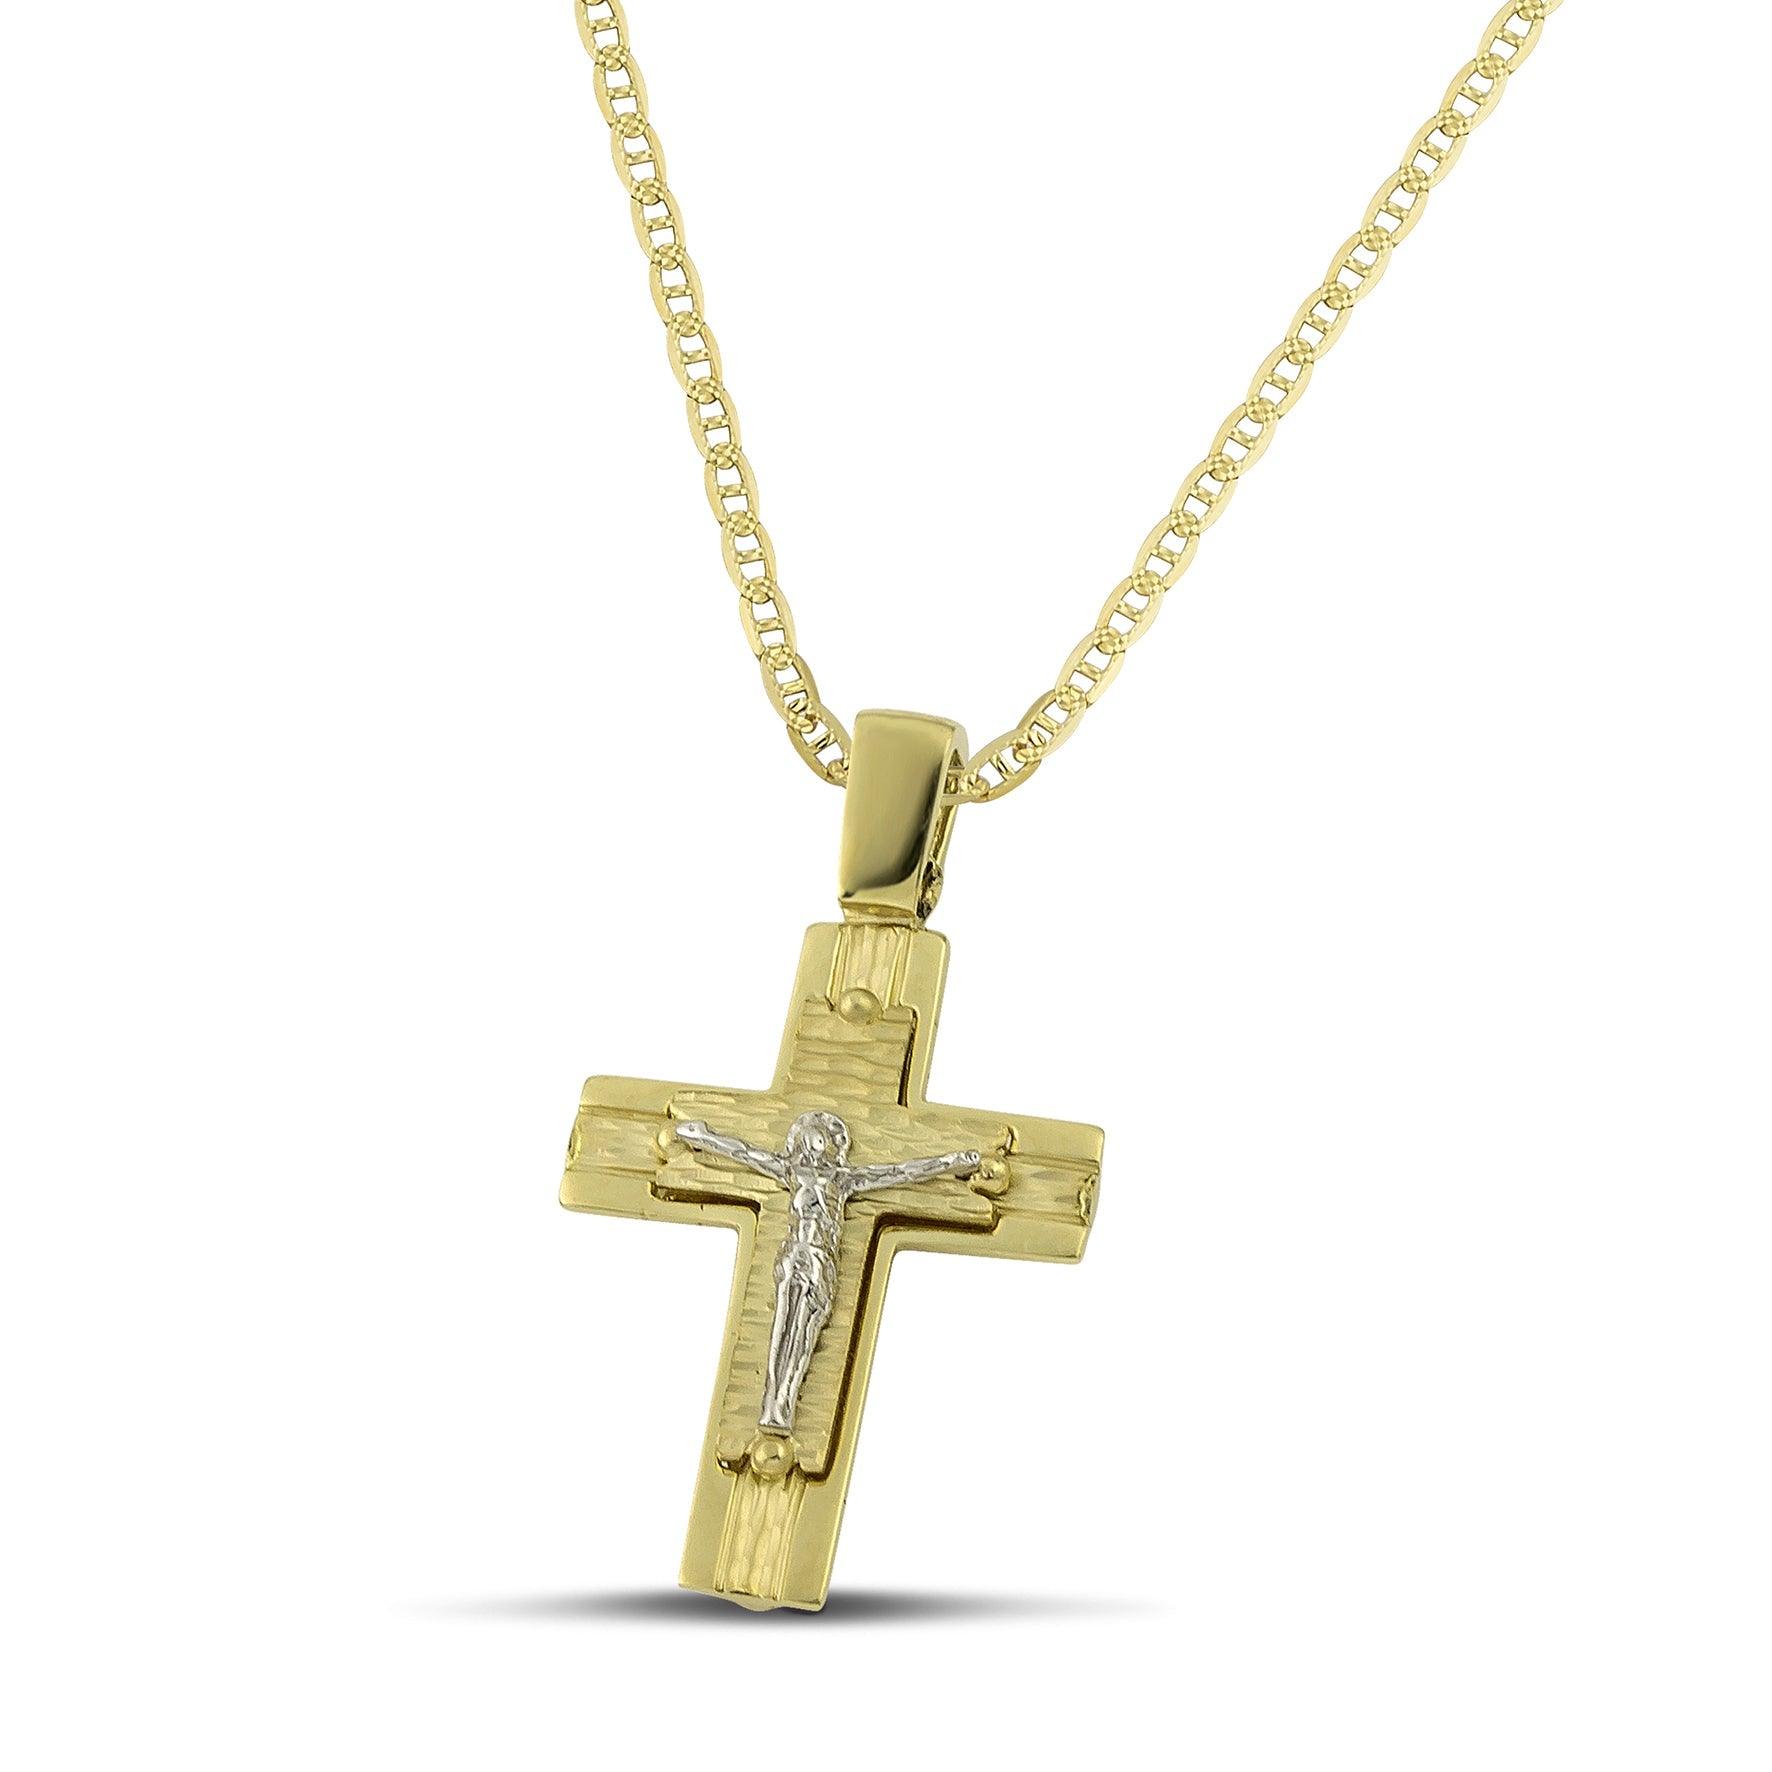 Ανδρικός βαπτιστικός σταυρός από χρυσό Κ14 διπλής όψης, φορεμένος σε «Θ» αλυσίδα. 